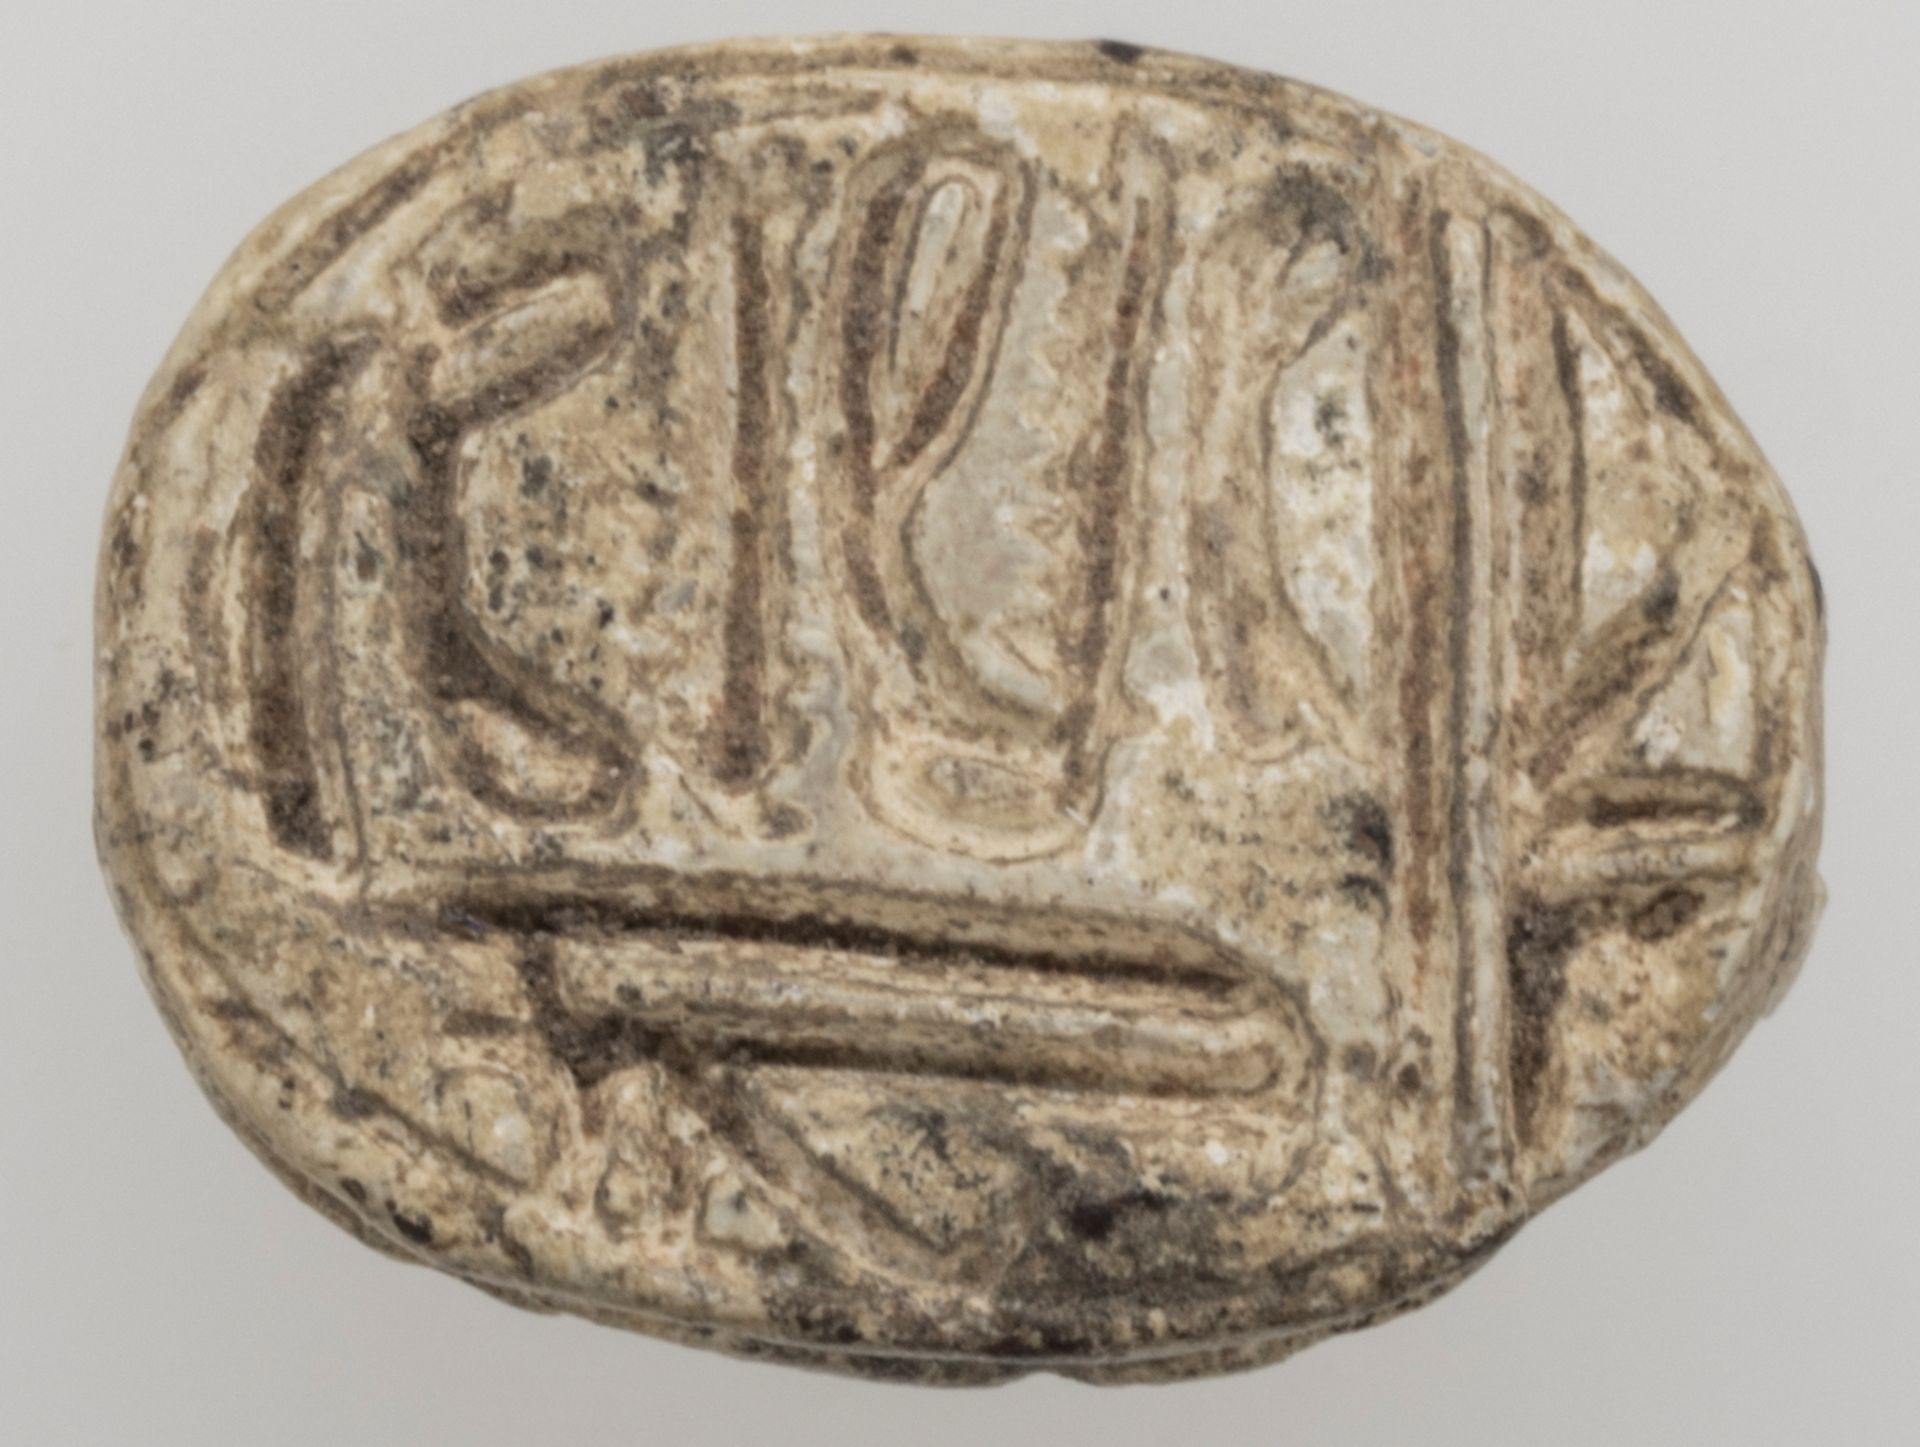 Ägypten Skarabäus, wahrscheinlich 19. Dynastie. Material: Steatit. Oberseite schematische - Bild 2 aus 4